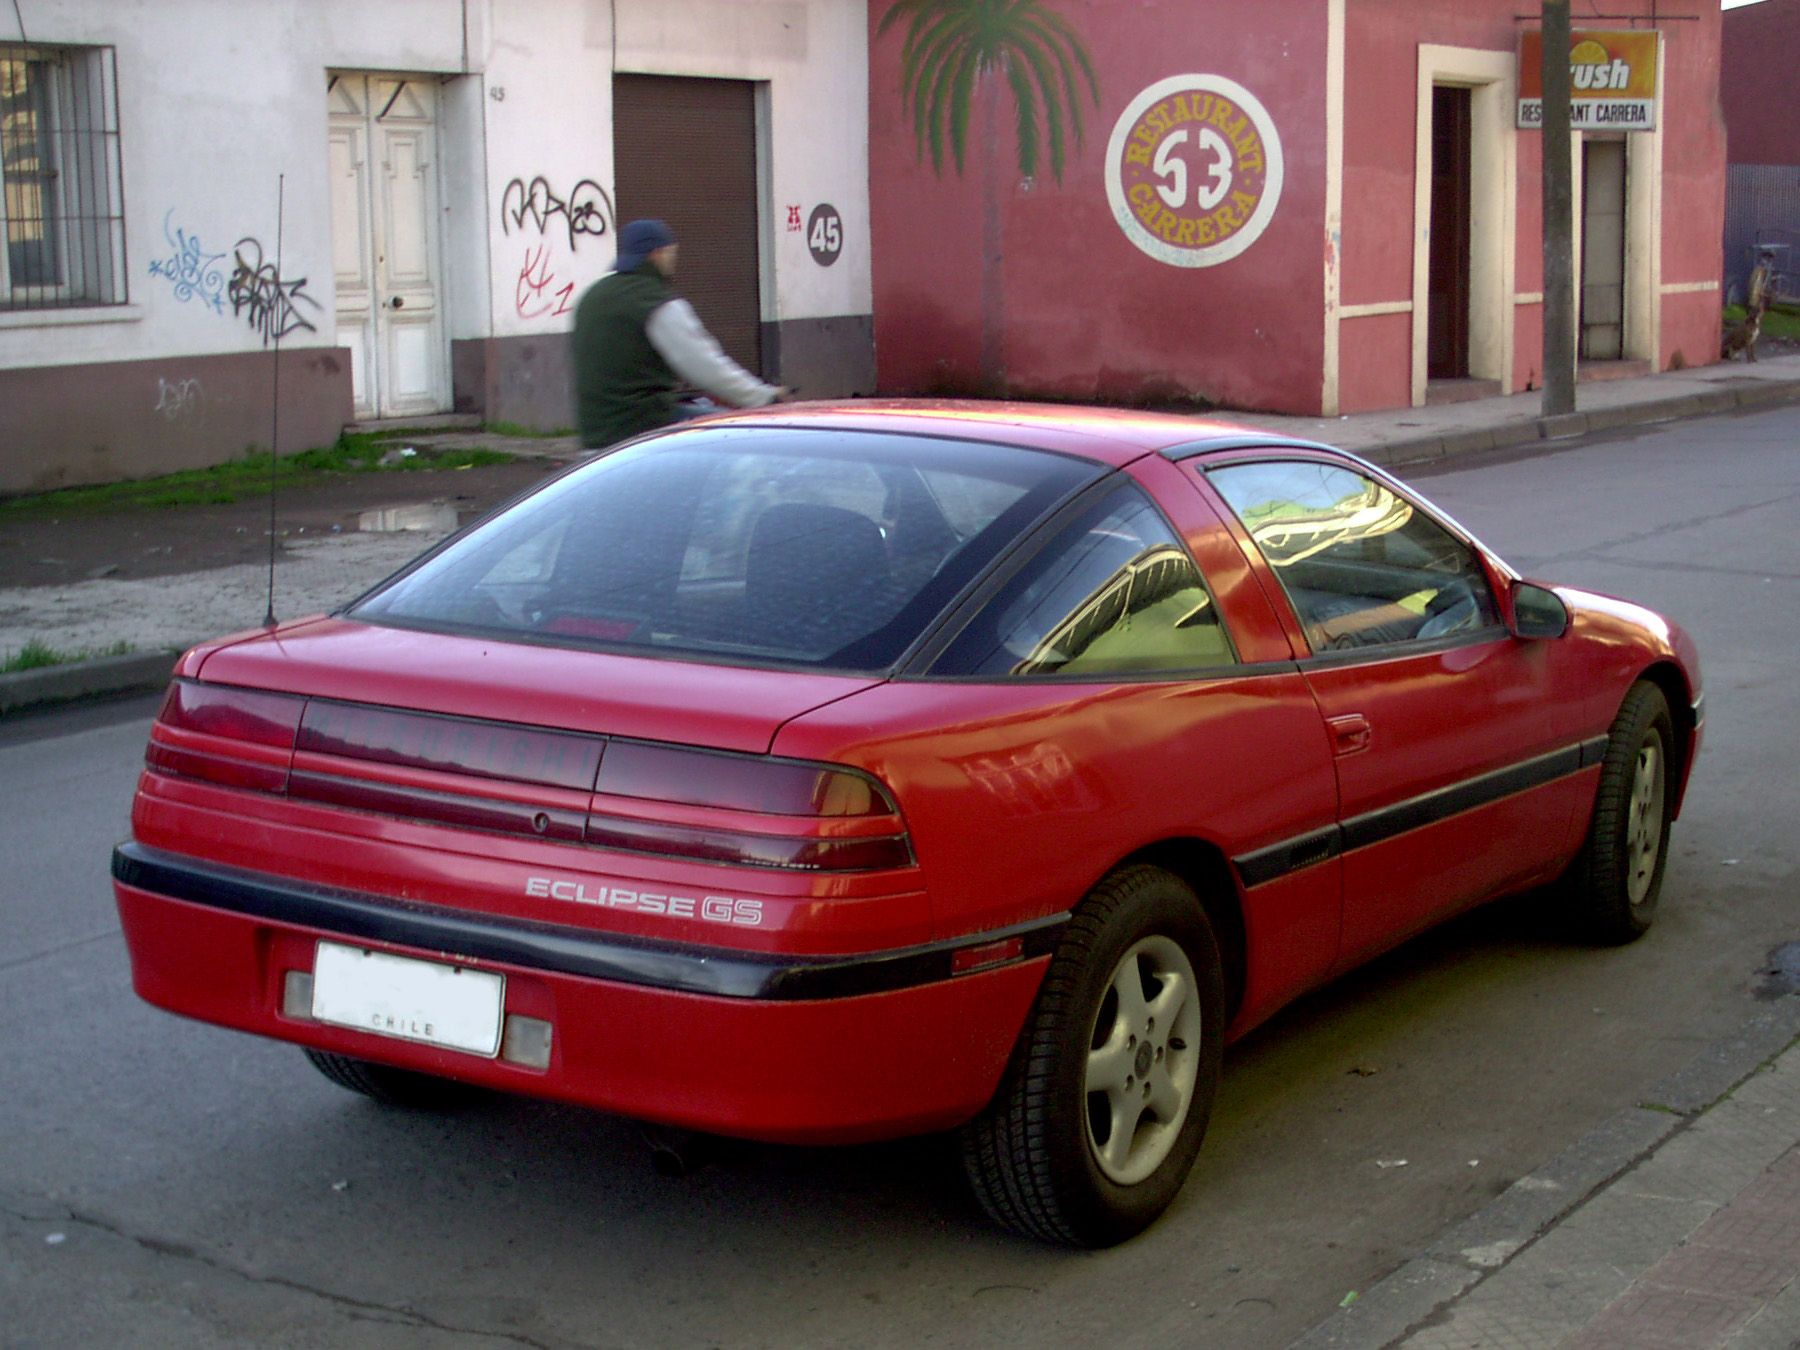 1992 Mitsubishi Eclipse 2.0 GS